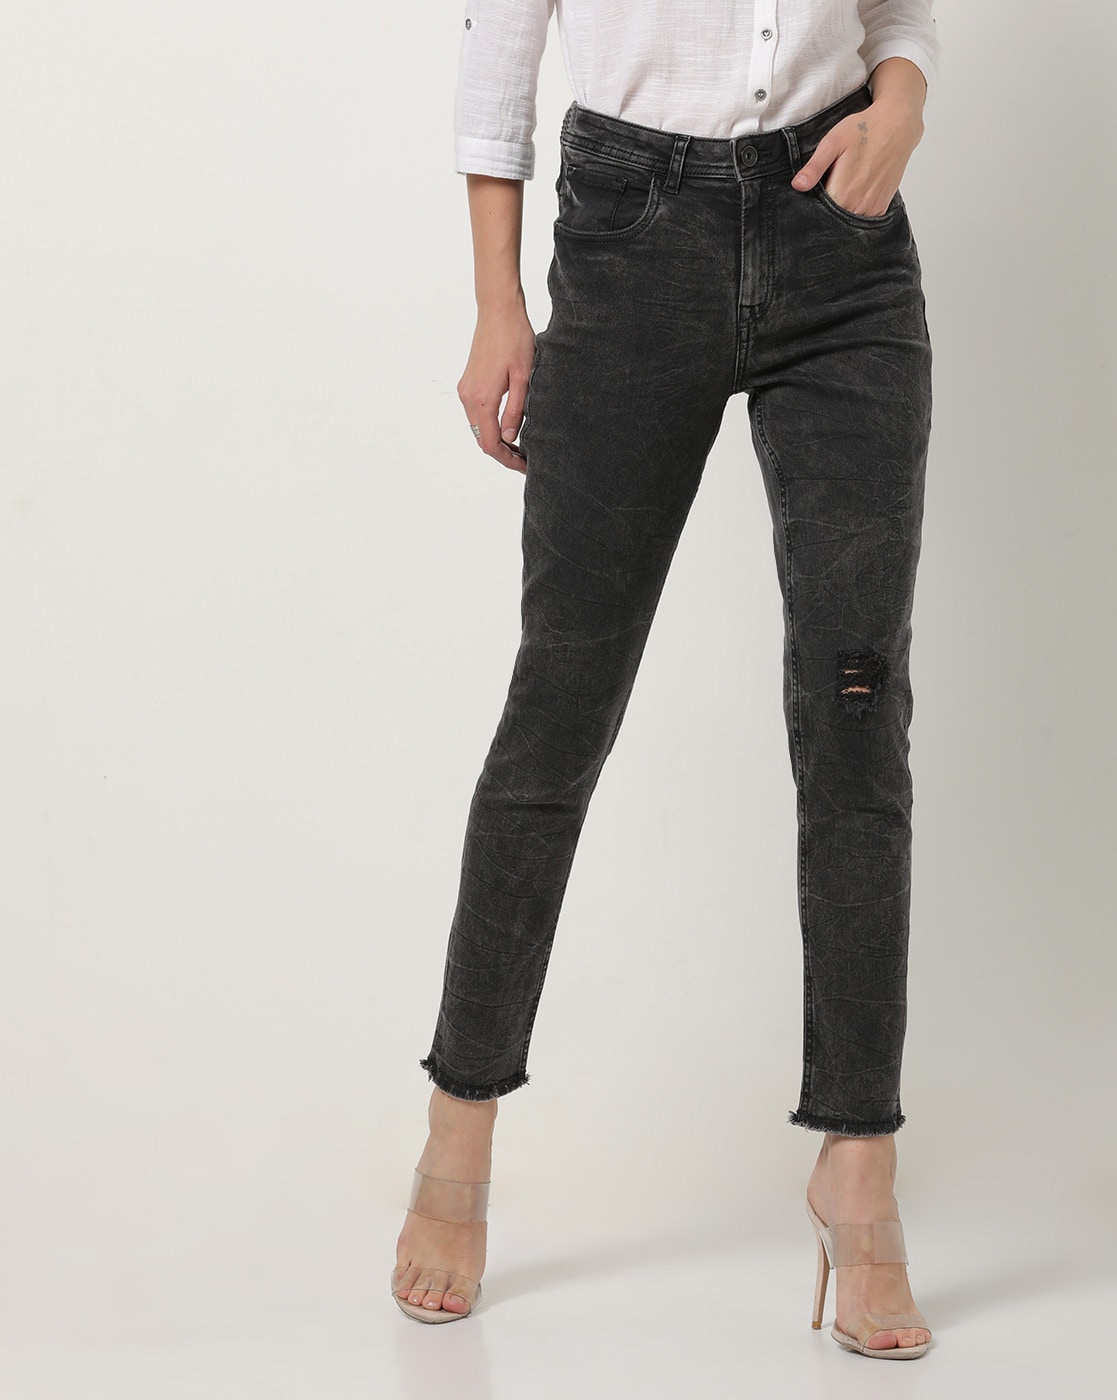 dark grey slim fit jeans